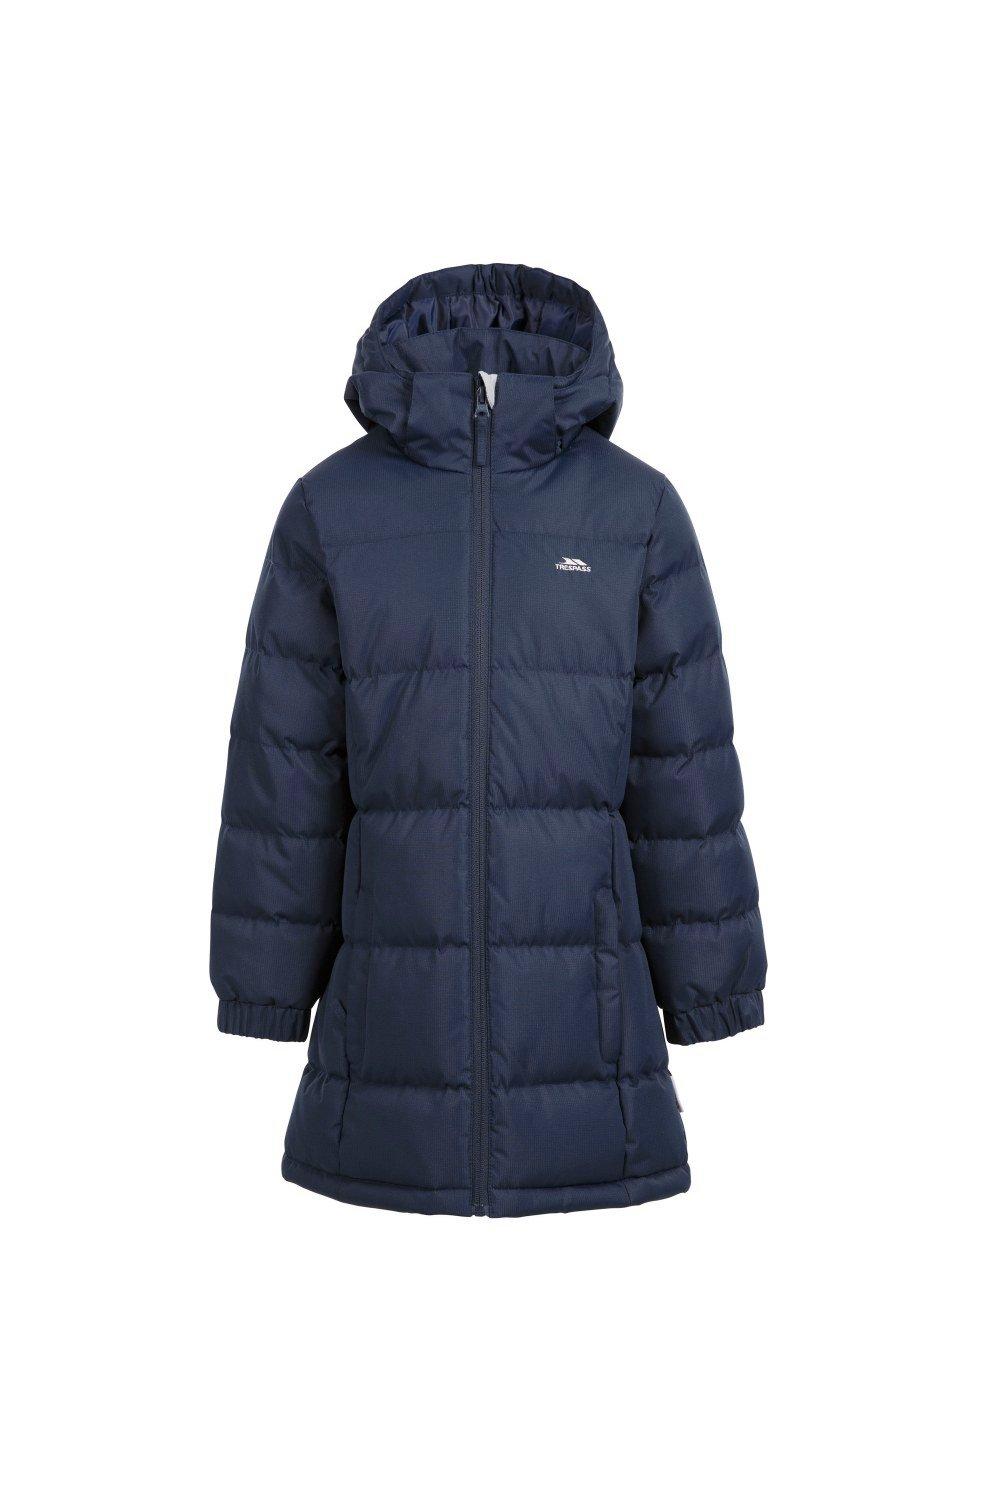 Стеганое пальто Tiffy Trespass, темно-синий куртка утепленная для девочек demix бежевый